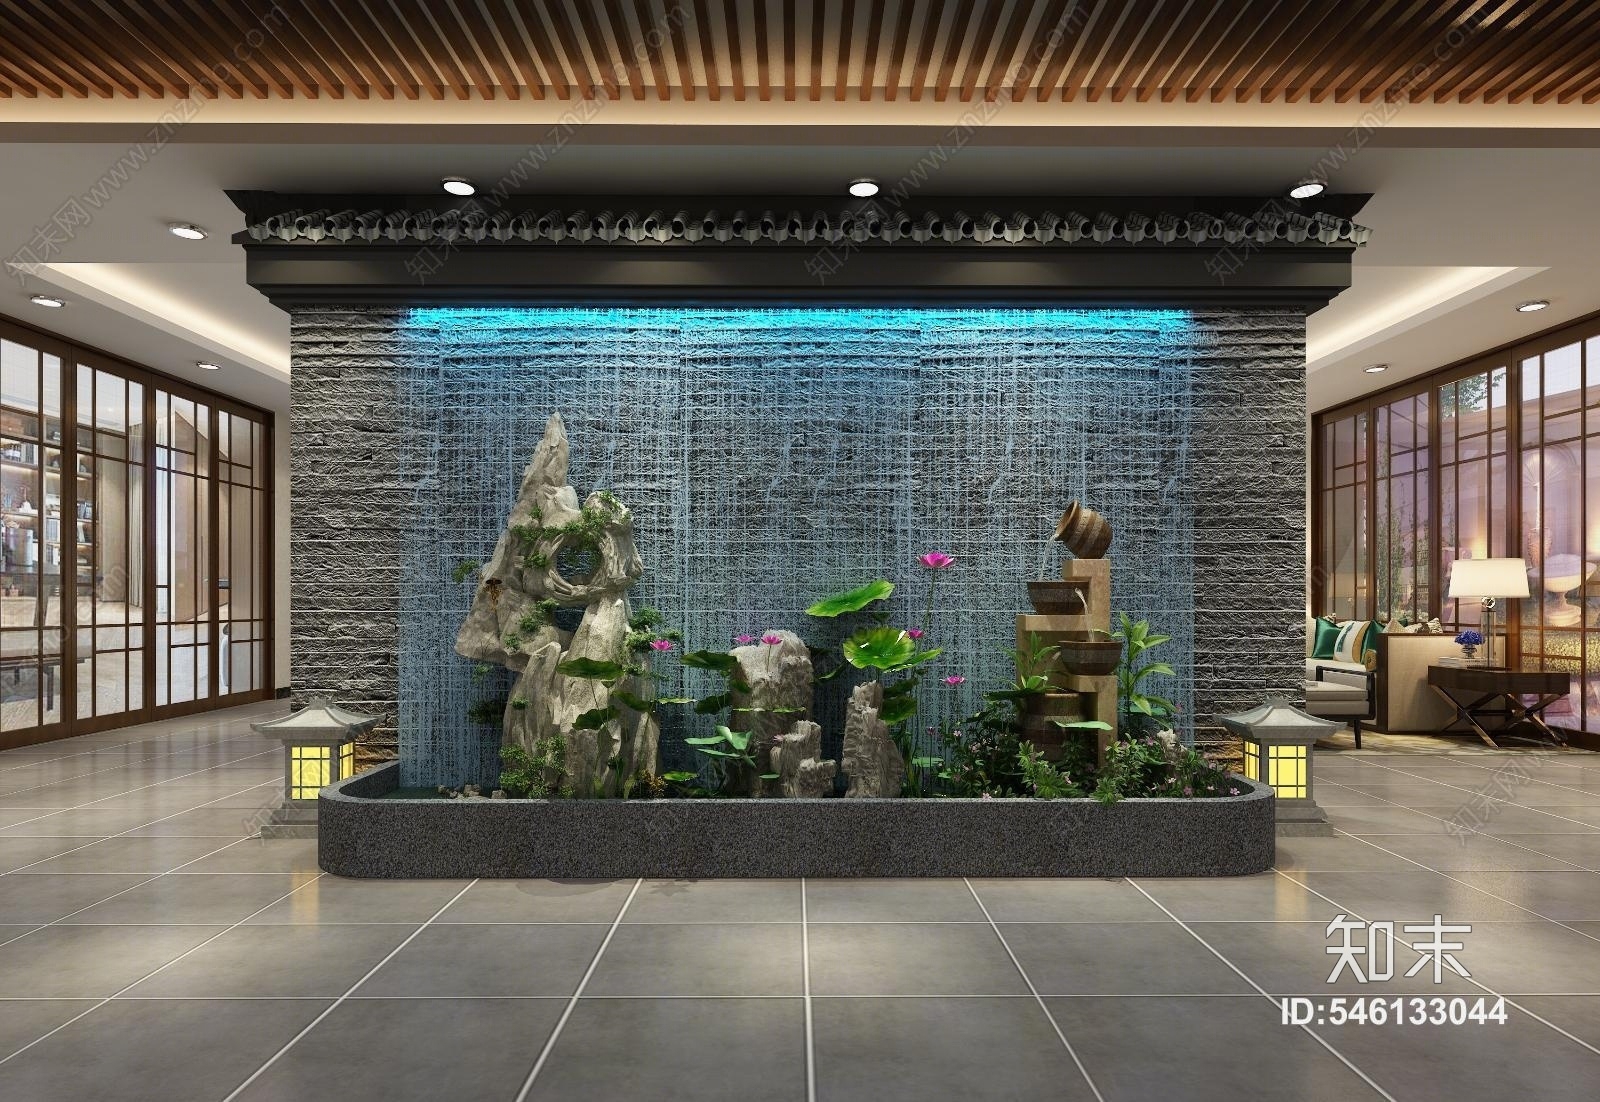 原创新中式中式餐厅 流水背景墙 假山水景小品 荷花水池3d模型下载